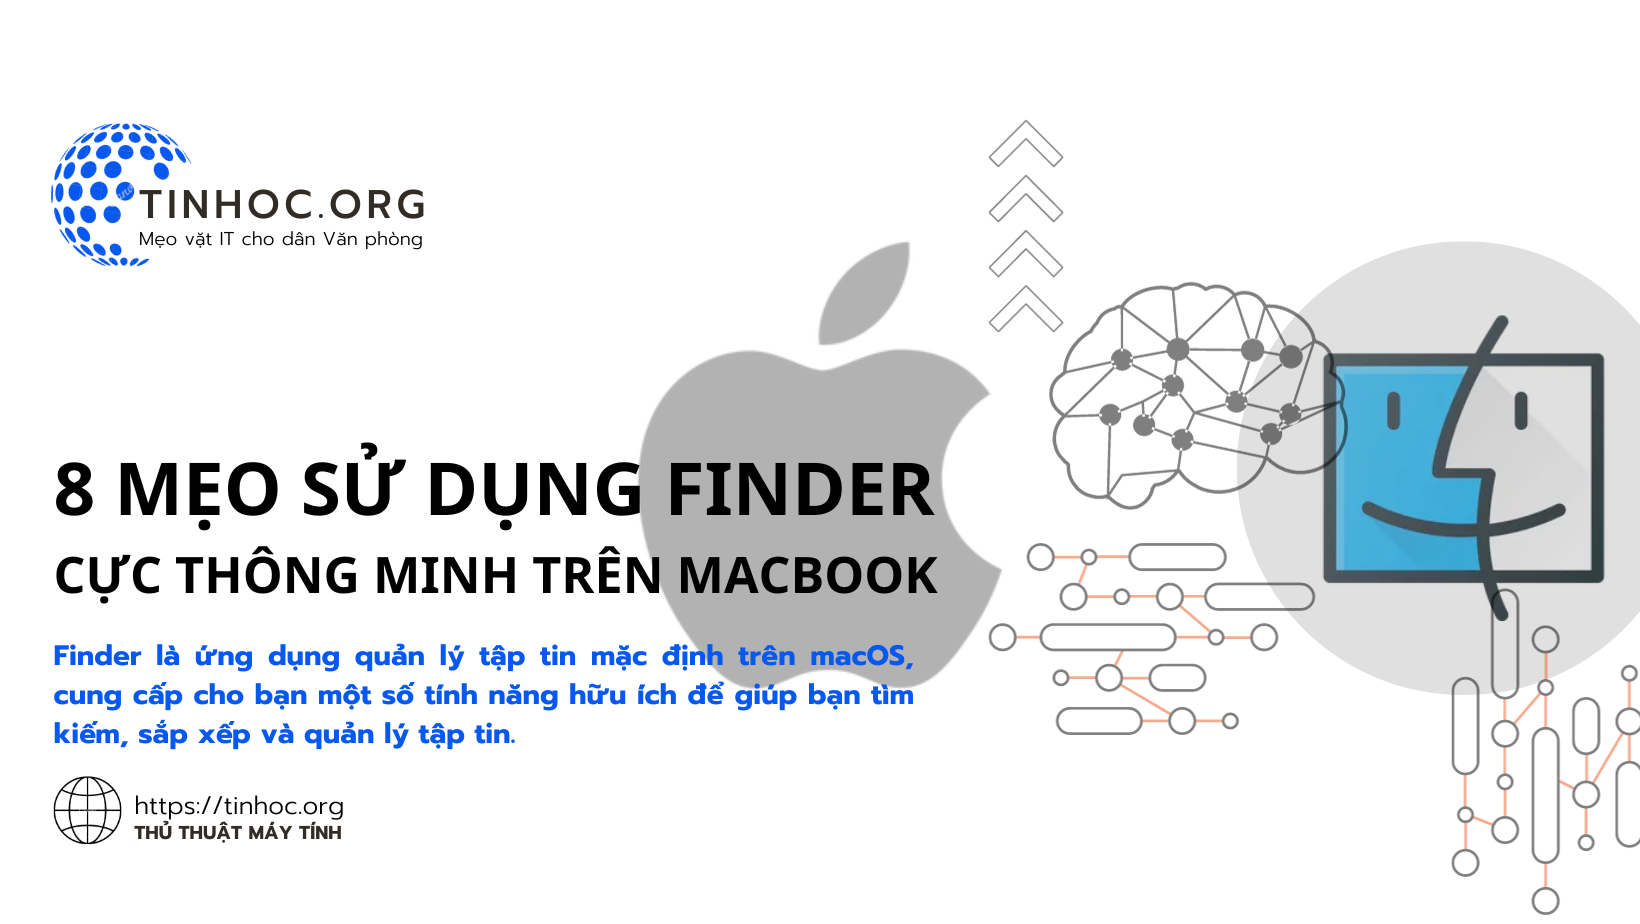 Finder là ứng dụng quản lý tập tin mặc định trên macOS, cung cấp cho bạn một số tính năng hữu ích để giúp bạn tìm kiếm, sắp xếp và quản lý tập tin.